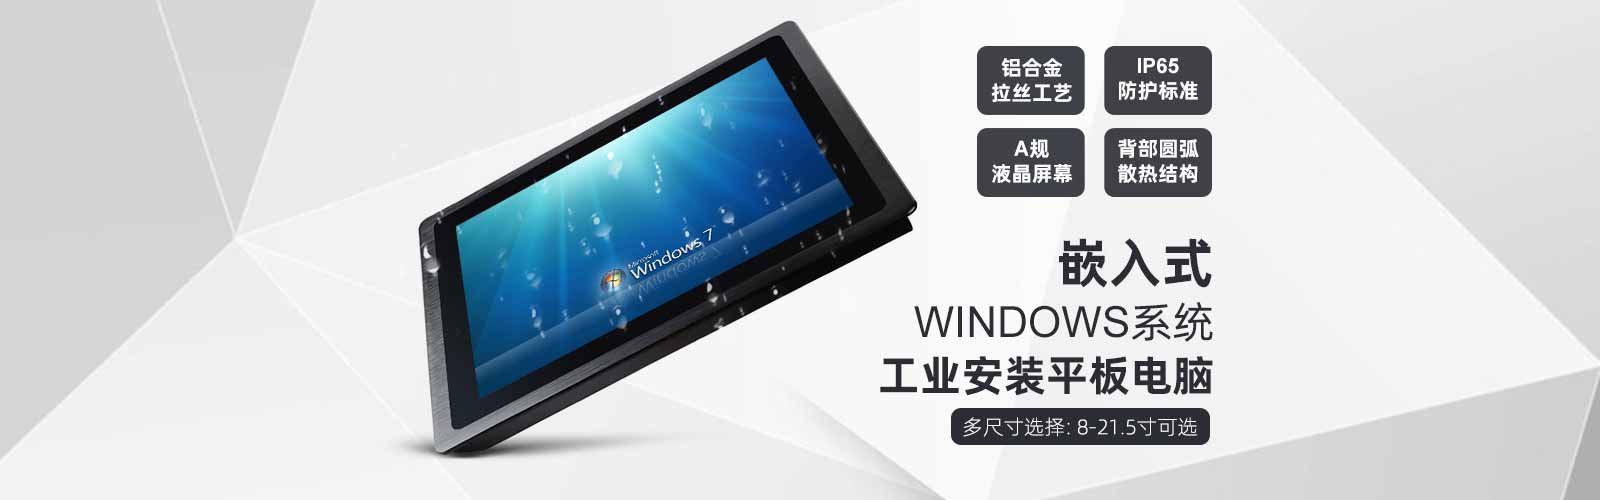 8到21.5寸windows系统嵌入式工业安装平板电脑